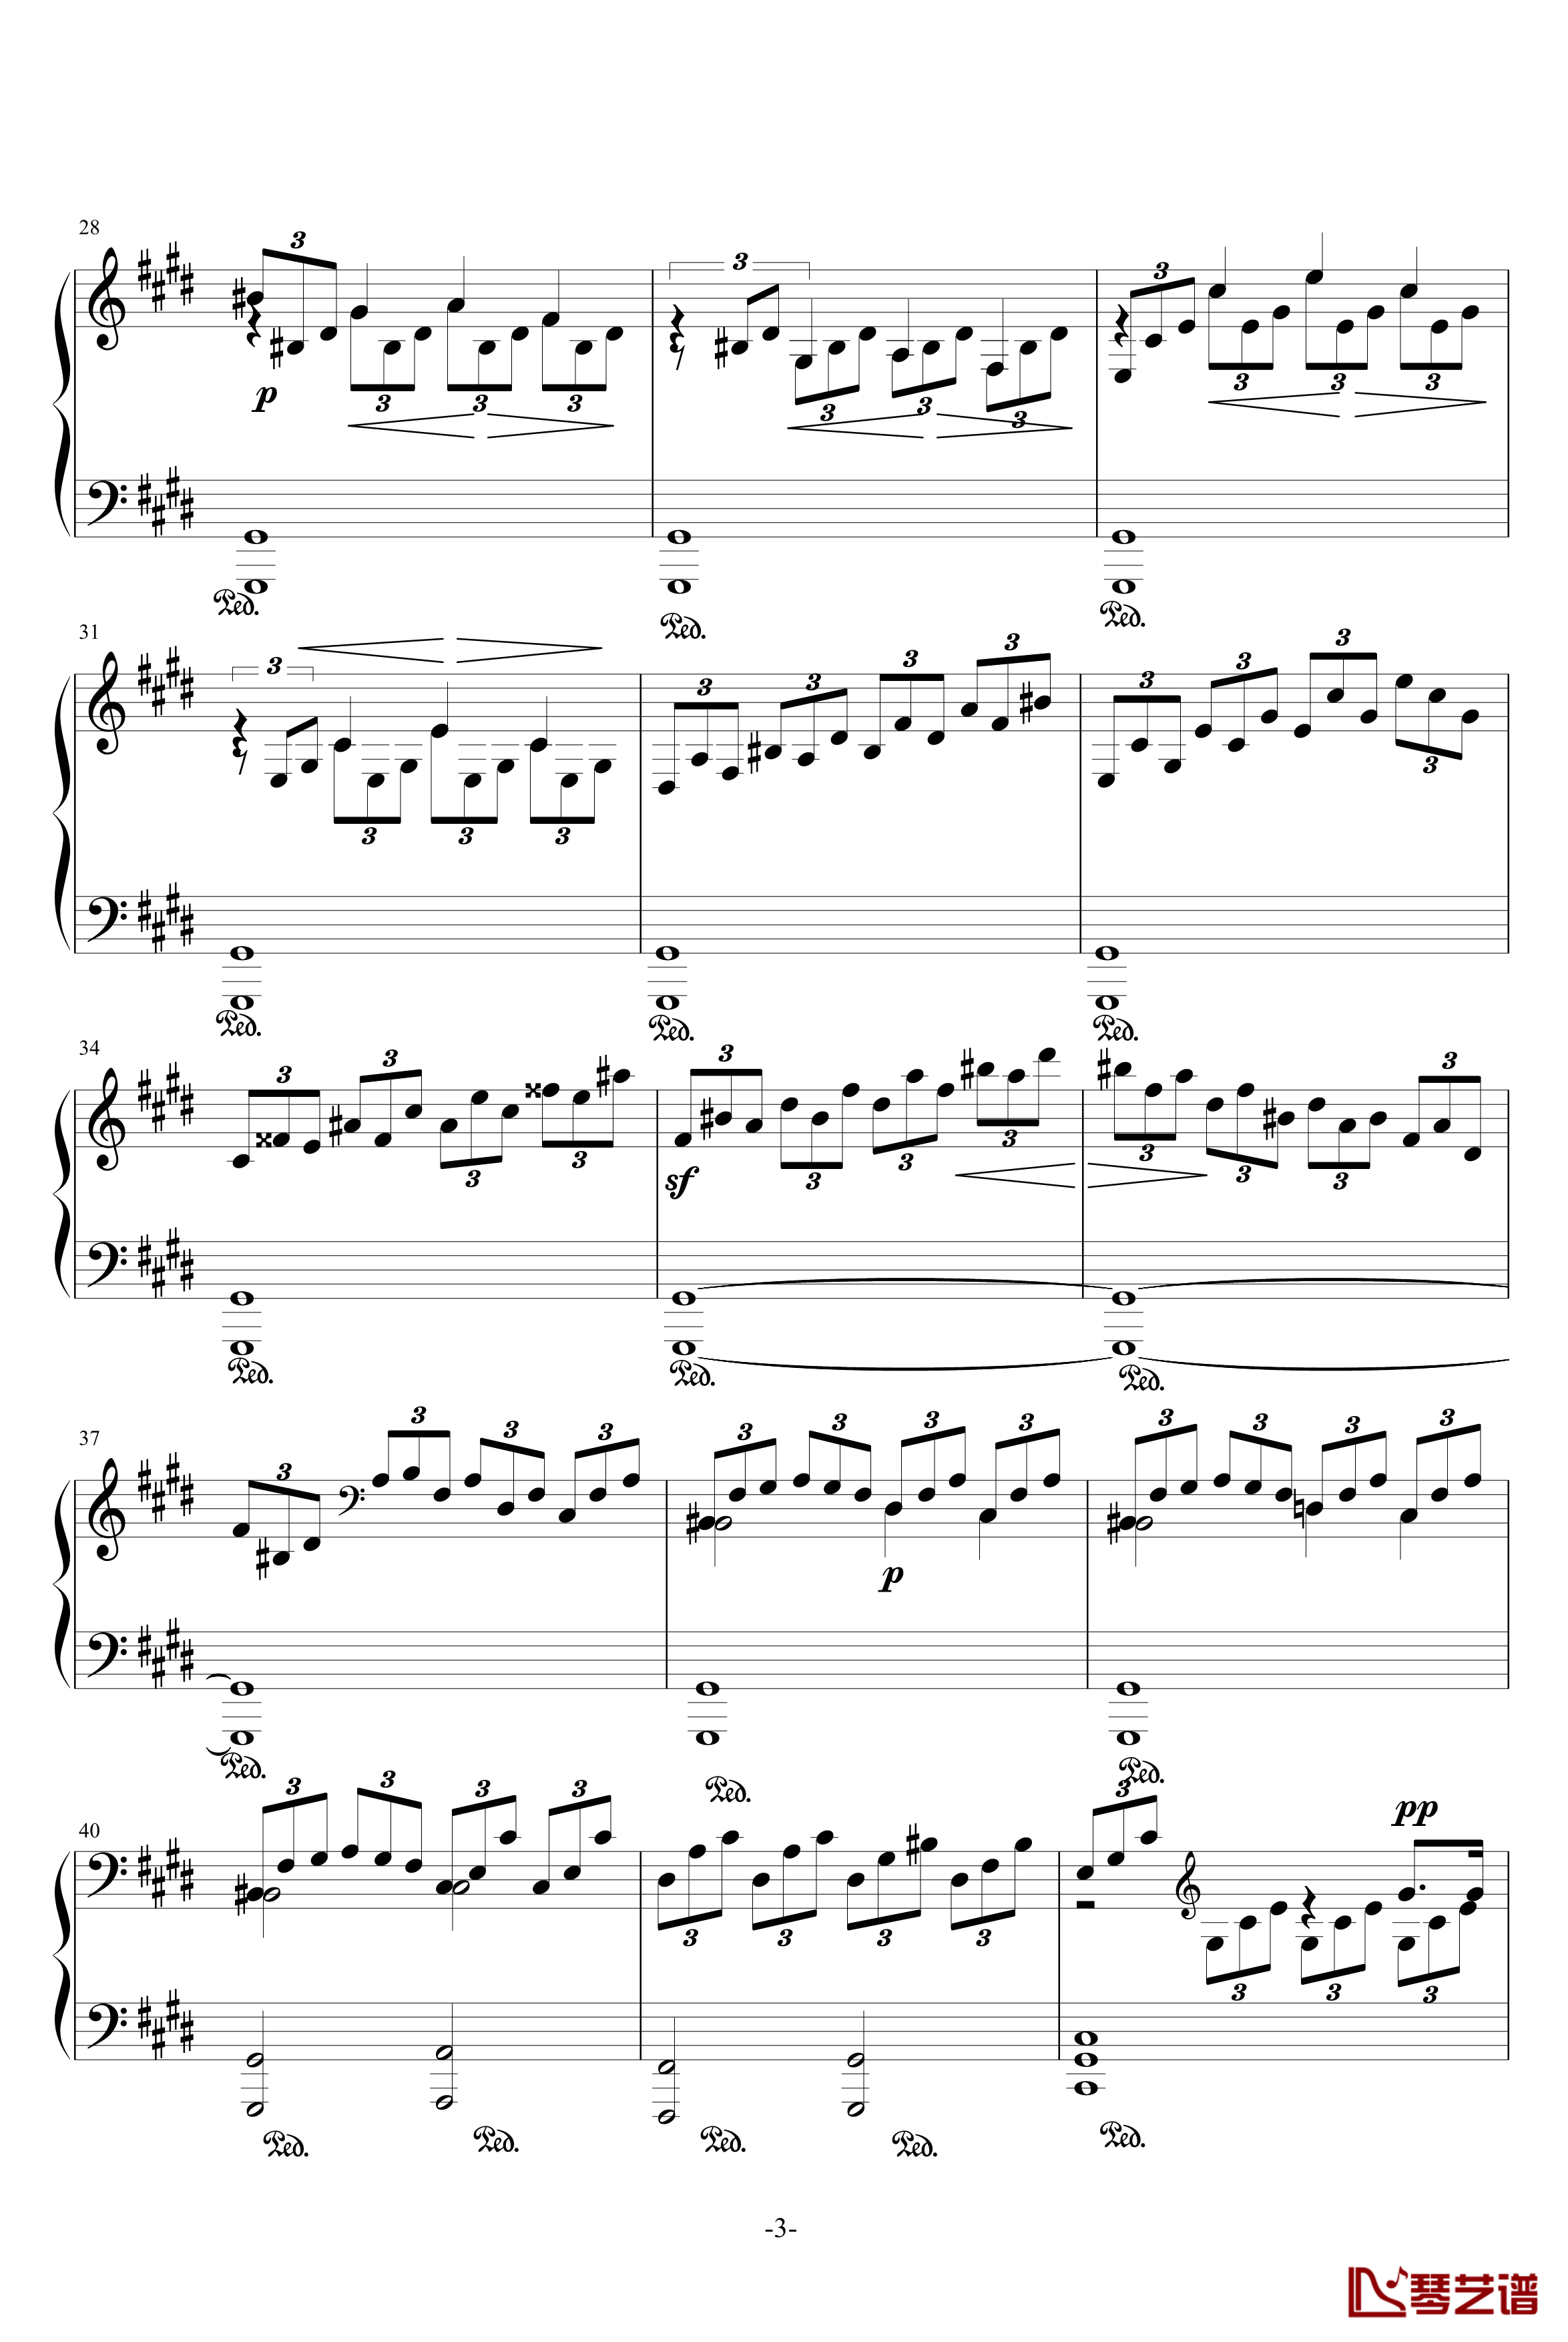 月光奏鸣曲钢琴谱-1，2，3乐章-贝多芬-beethoven3